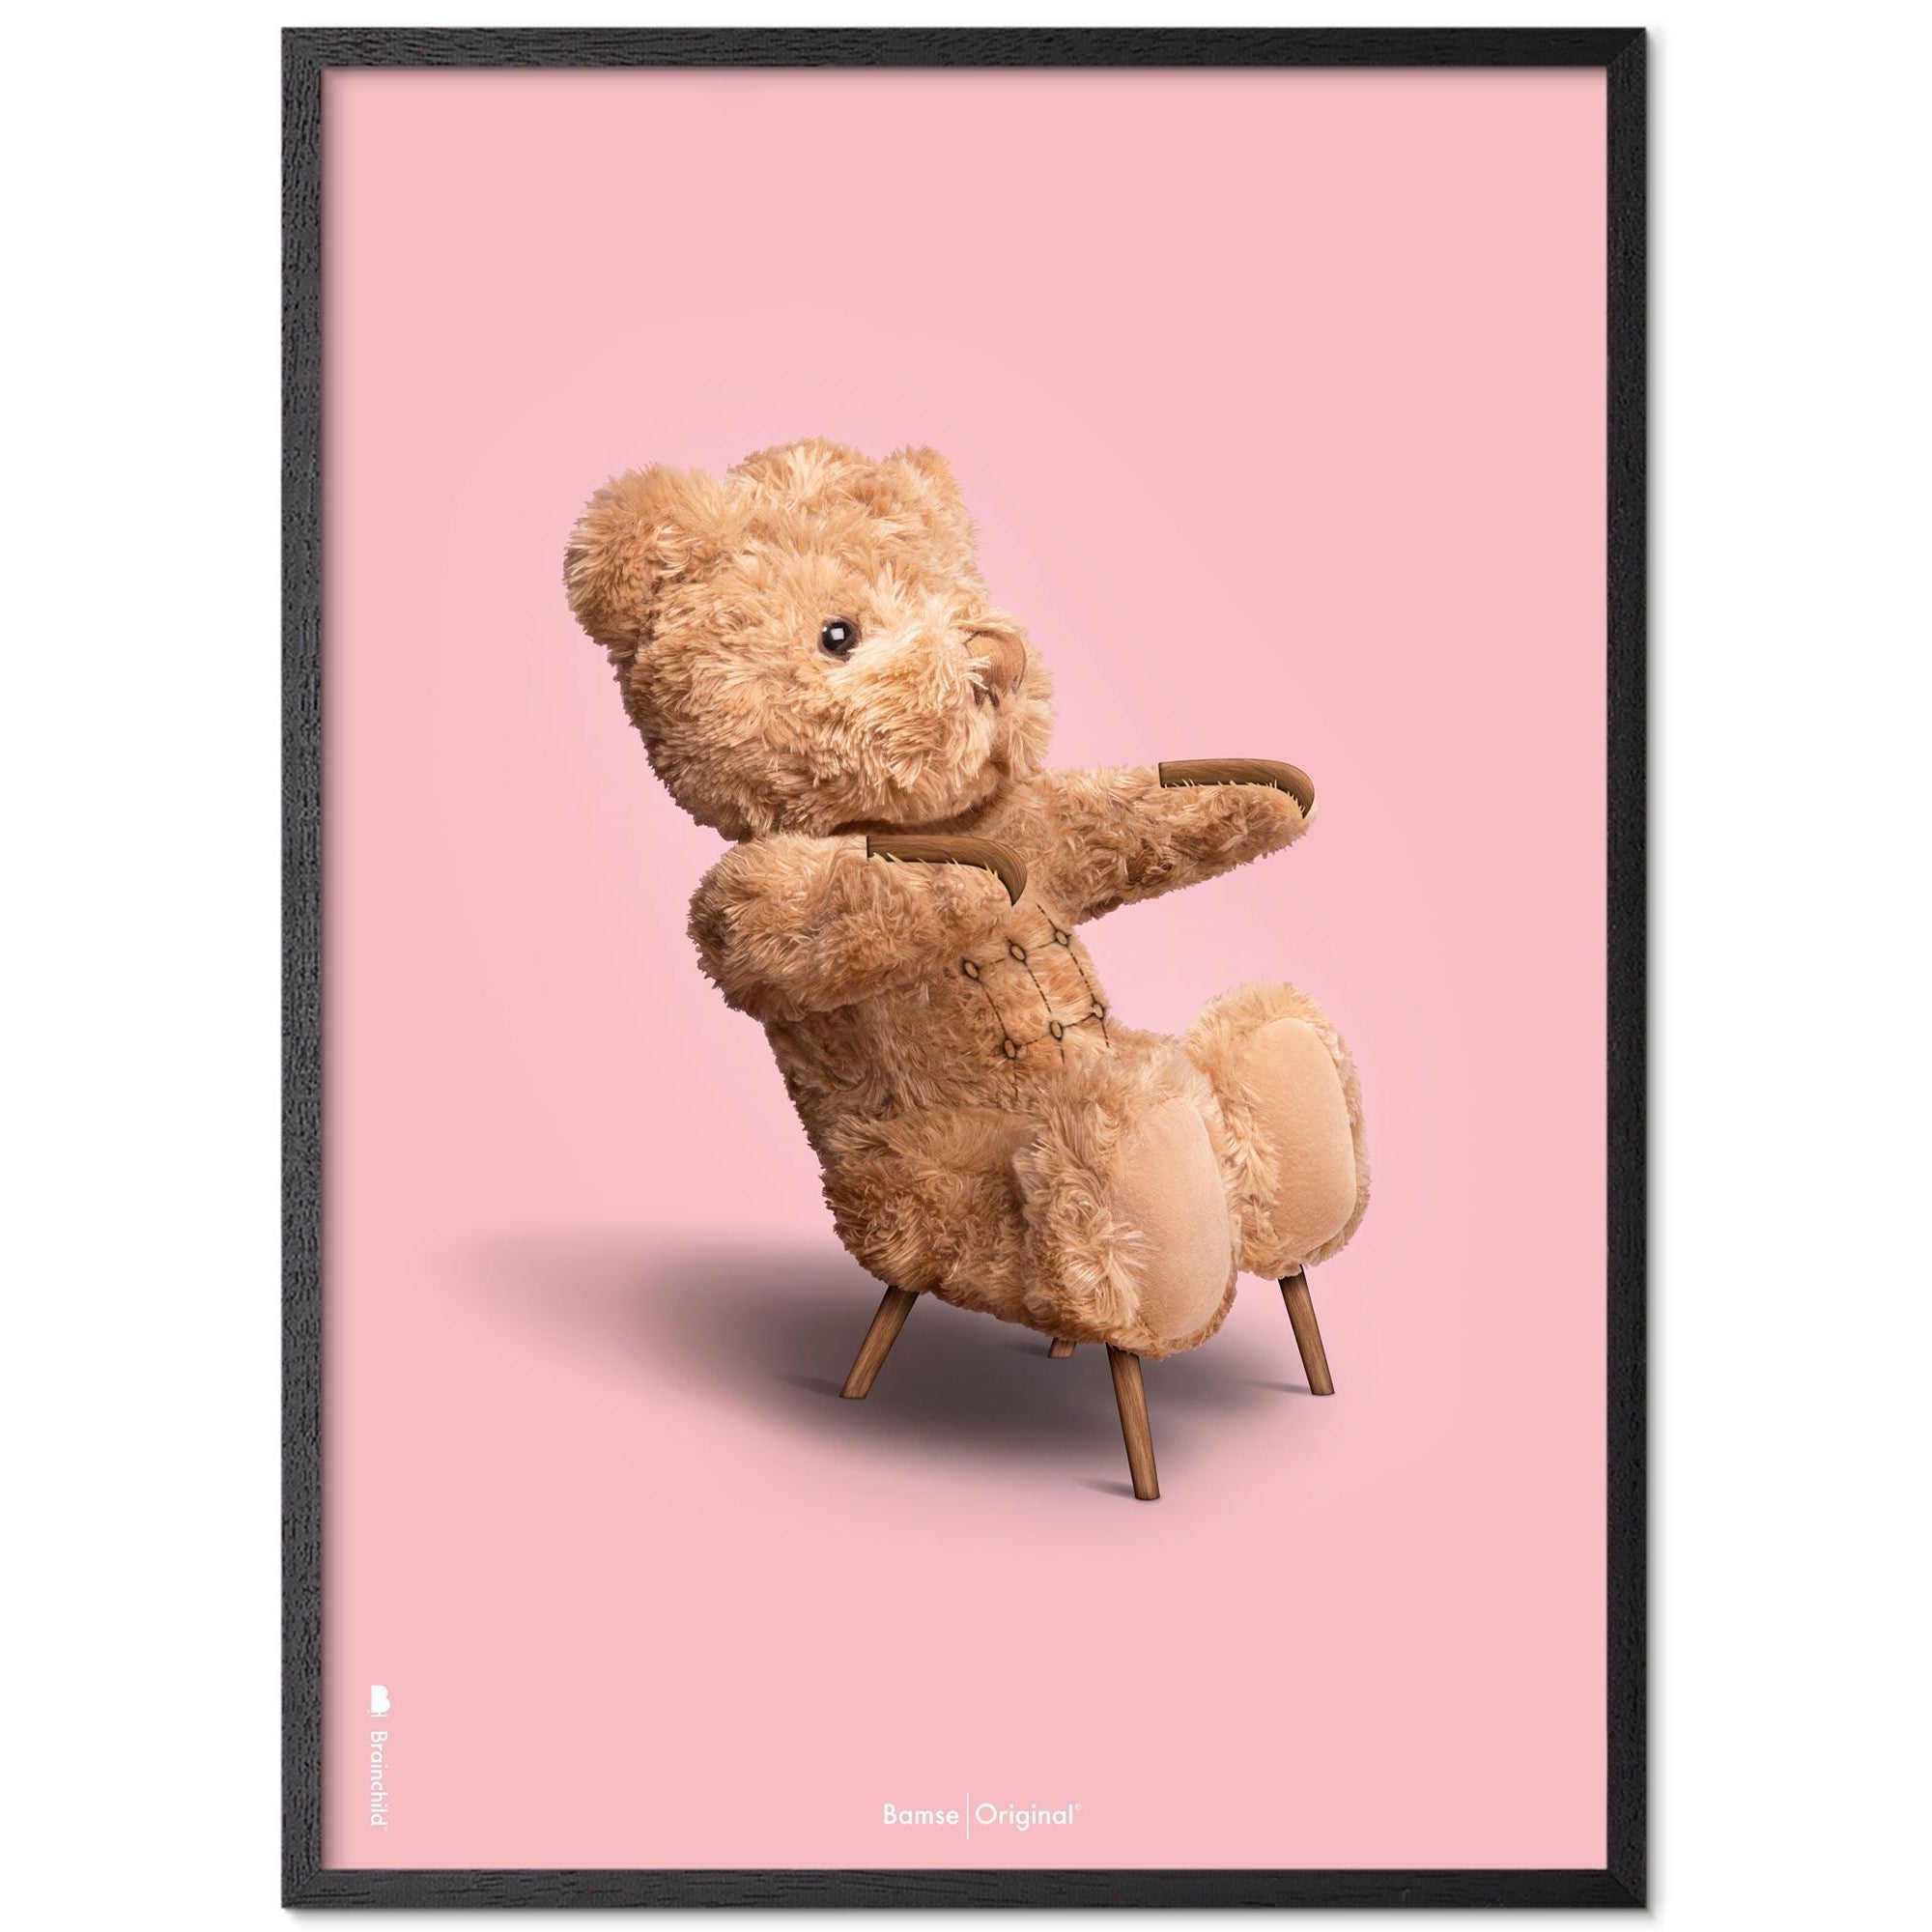 Brainchild Teddy Bear Classic plakát z plakátu vyrobený z černého lakovaného dřeva 30x40 cm, růžové pozadí